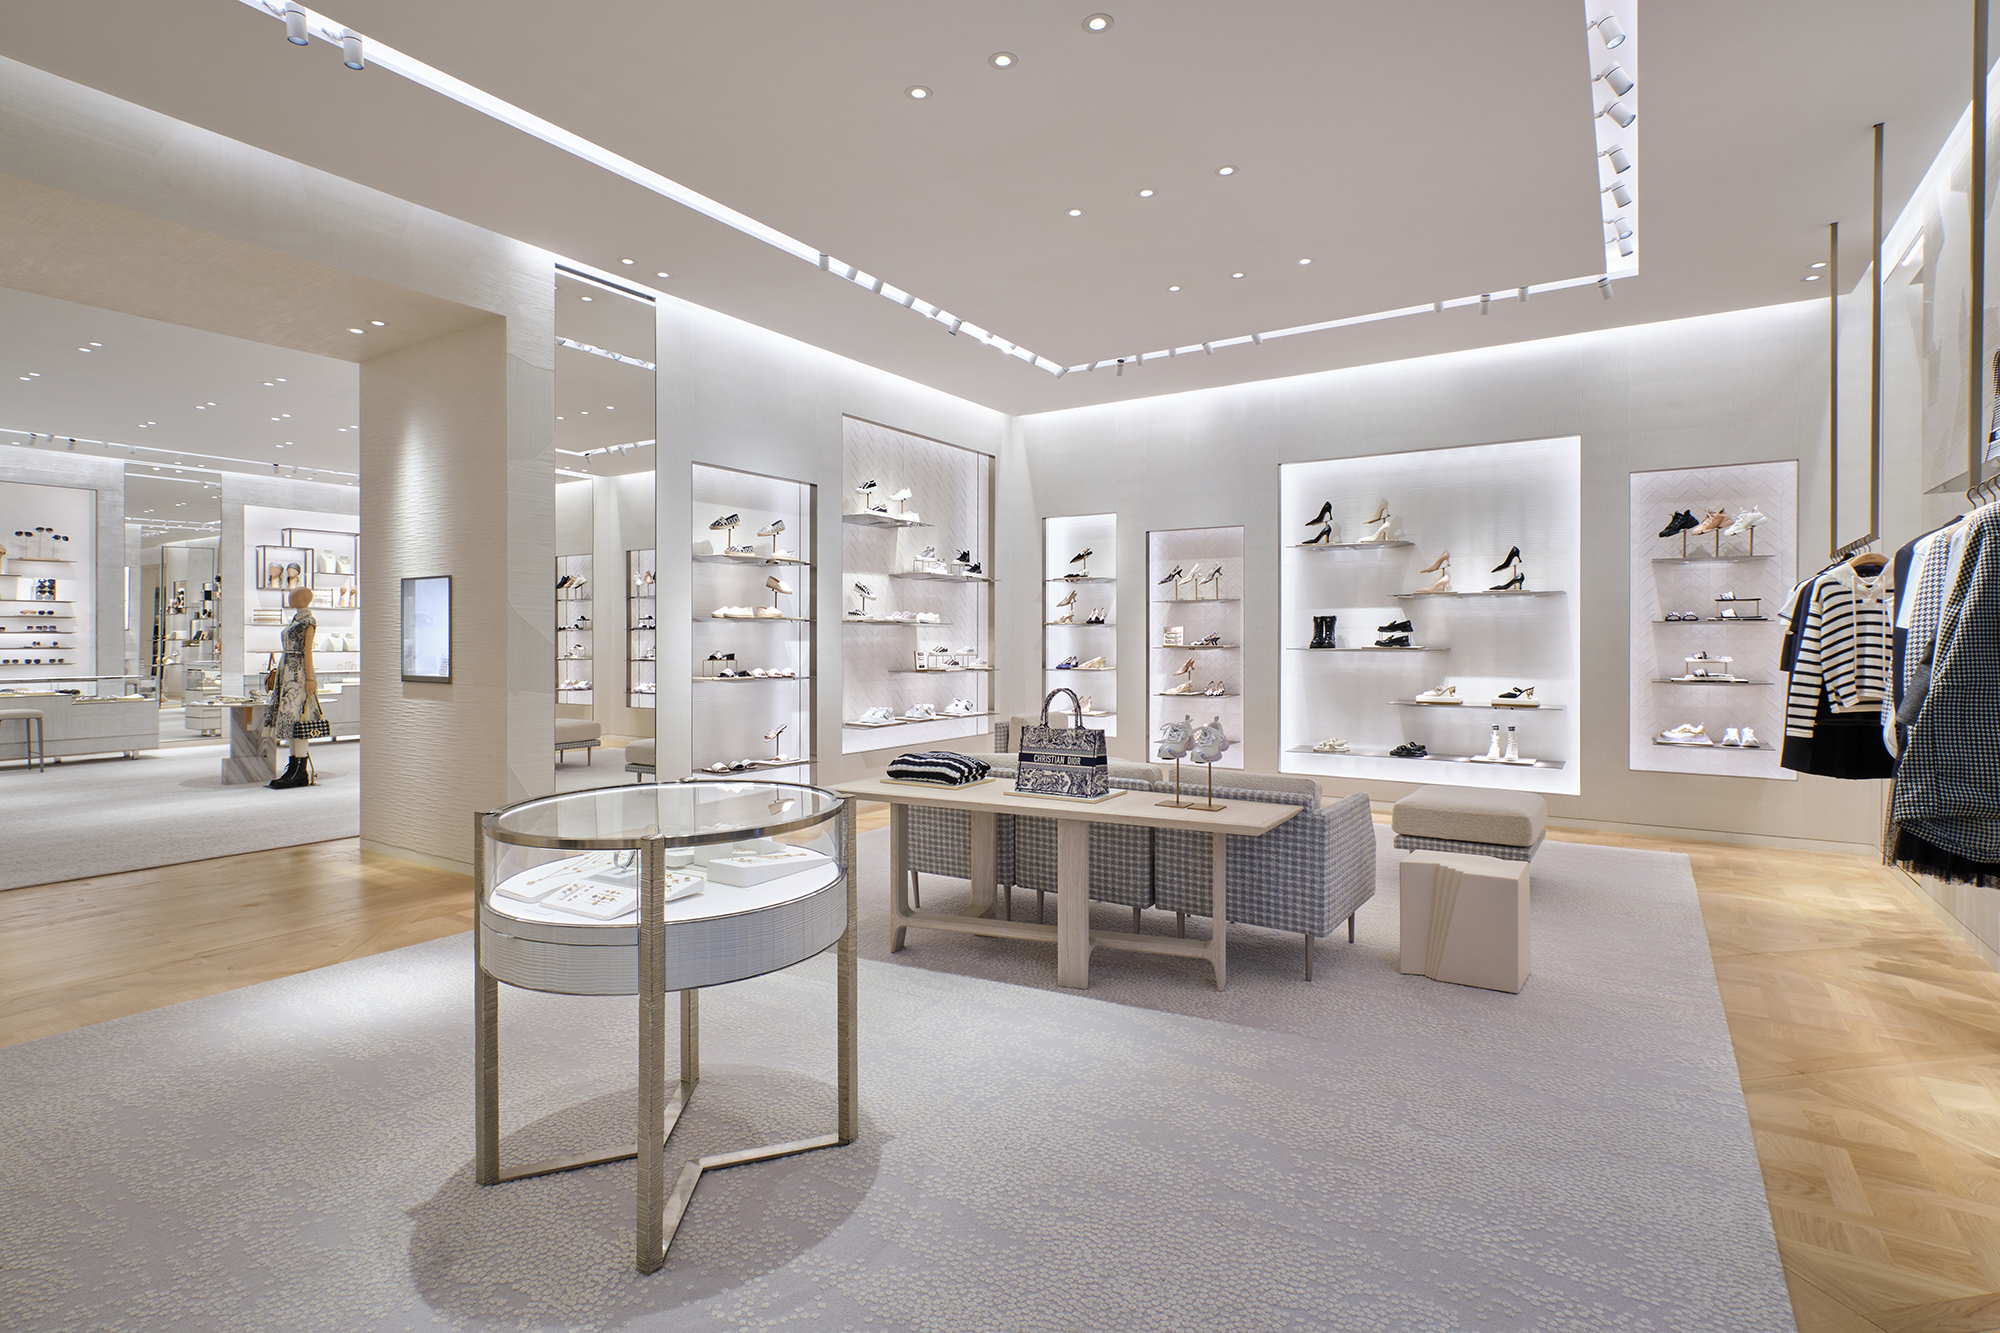 Sao Việt dự khai trương cửa hàng mới của Christian Dior  VnExpress Giải trí